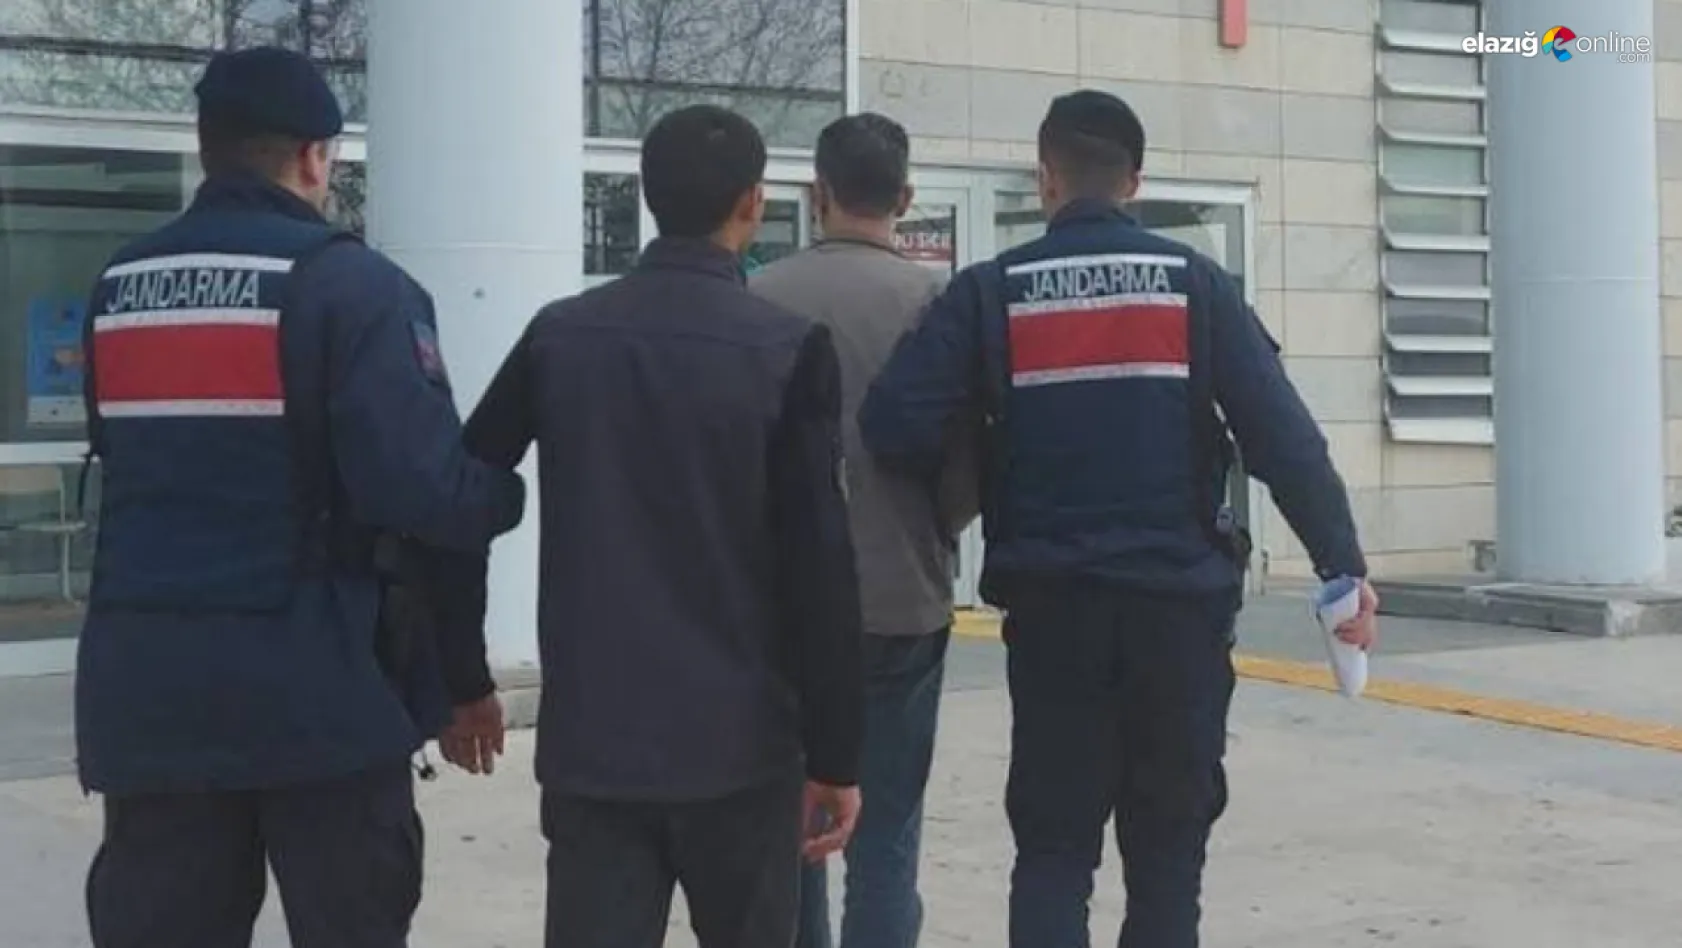 Elazığ'da kesinleşmiş hapis cezası bulunan 2 zanlı yakalandı